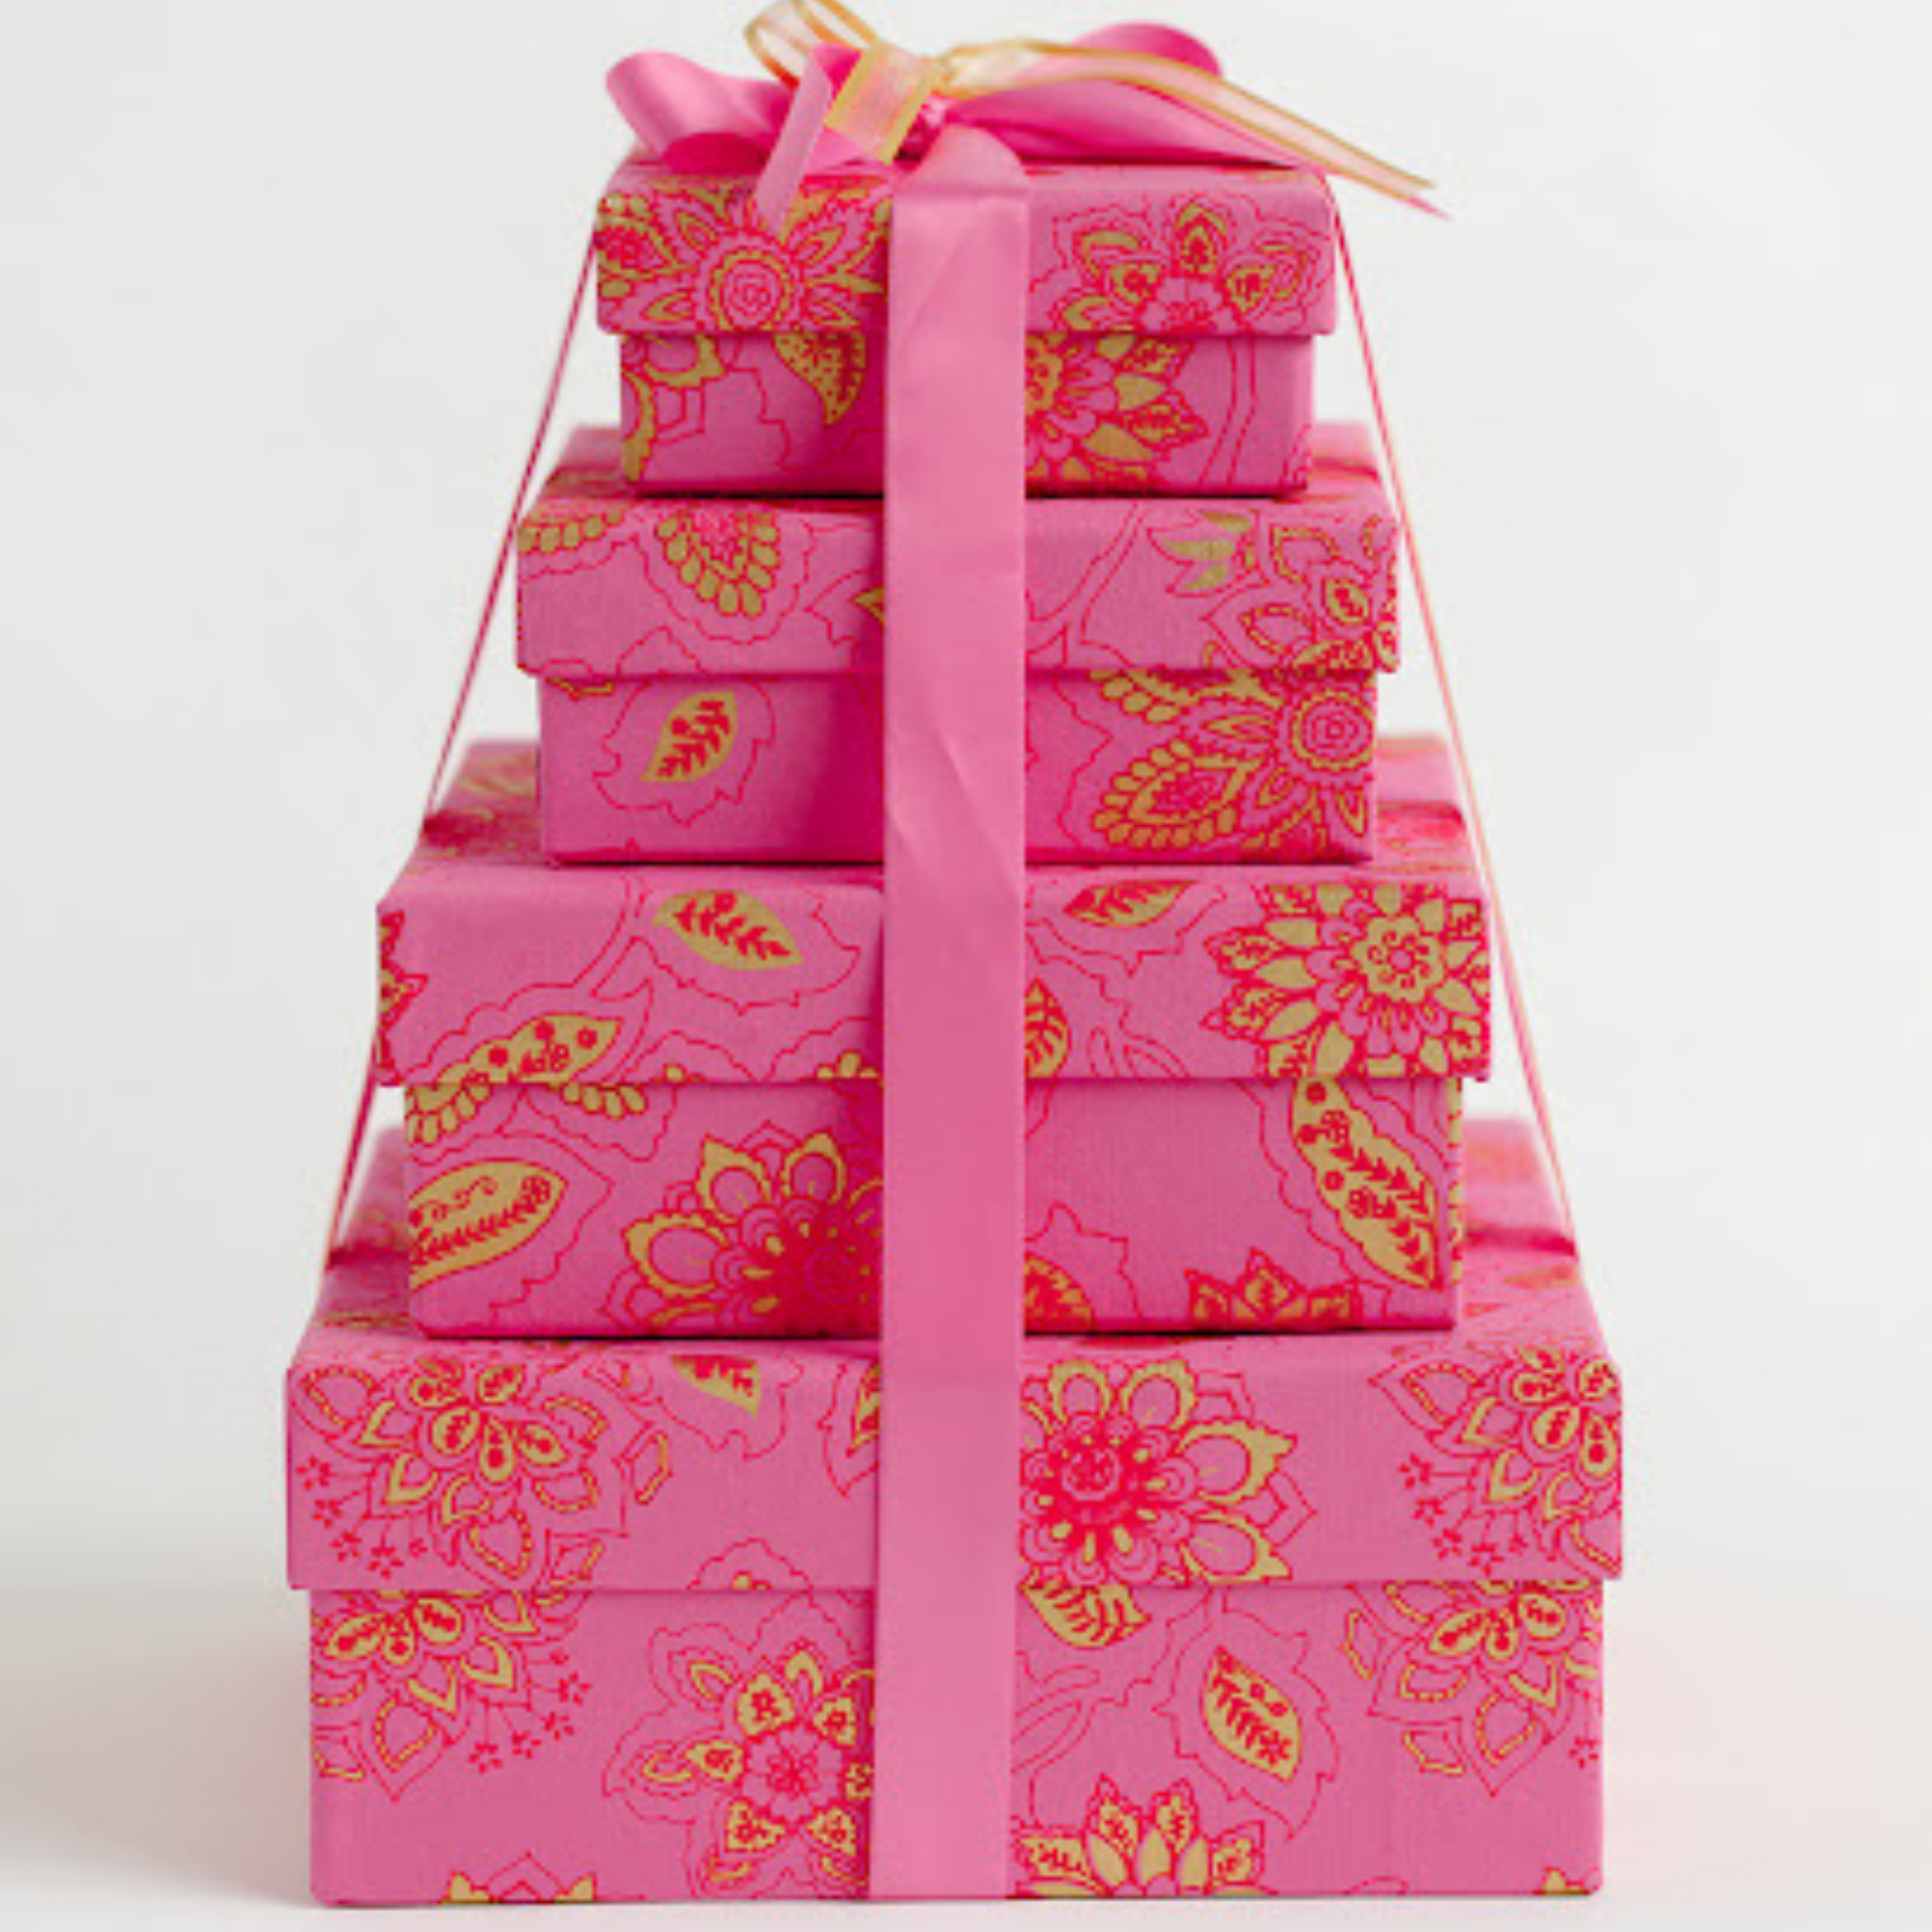 bridal shower, bridal gifting hot pink gift box